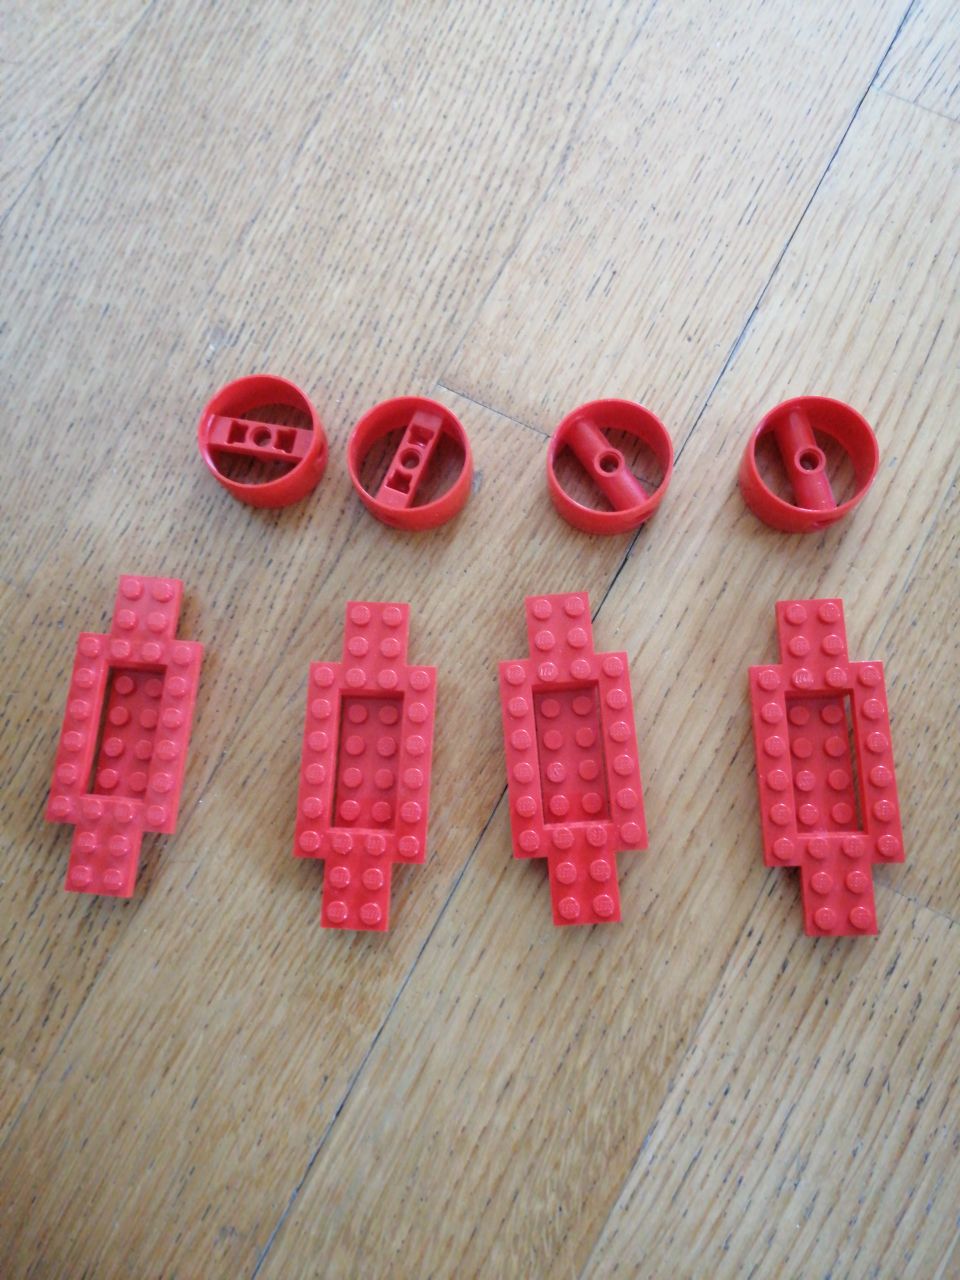 Lego osat